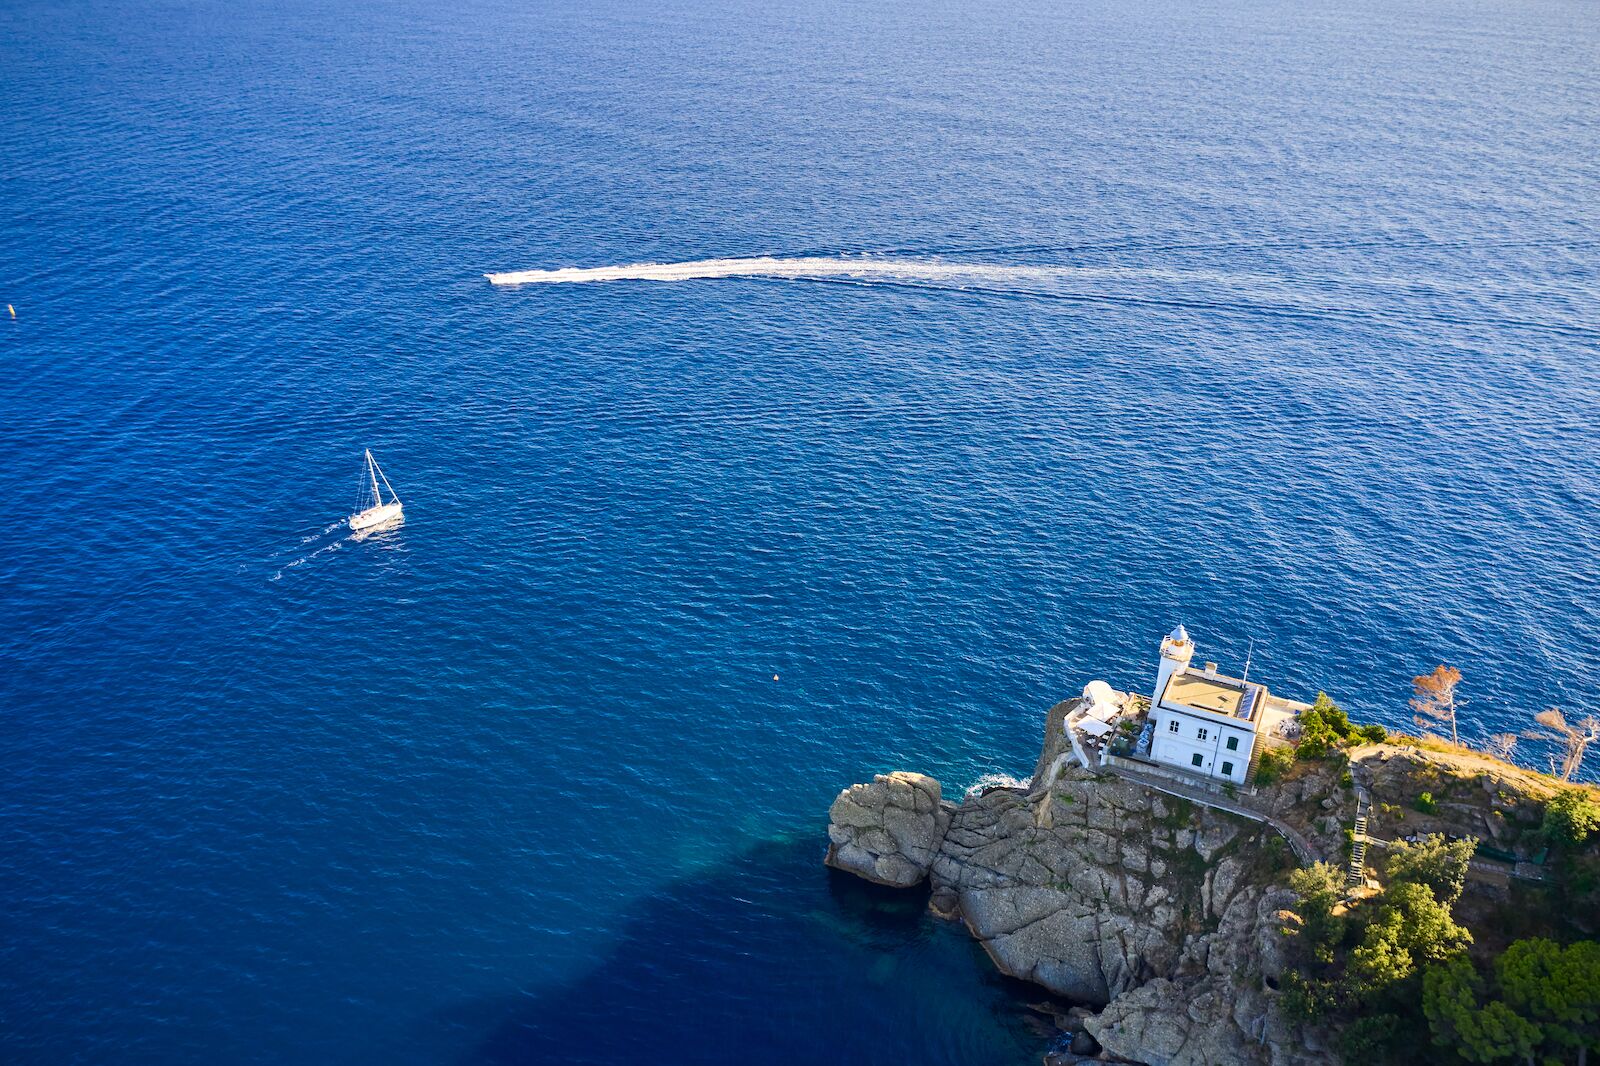 Un yate blanco y una lancha motora navegan cerca de un faro en Portofino, Italia. Un faro está situado en la colina cerca de una playa.